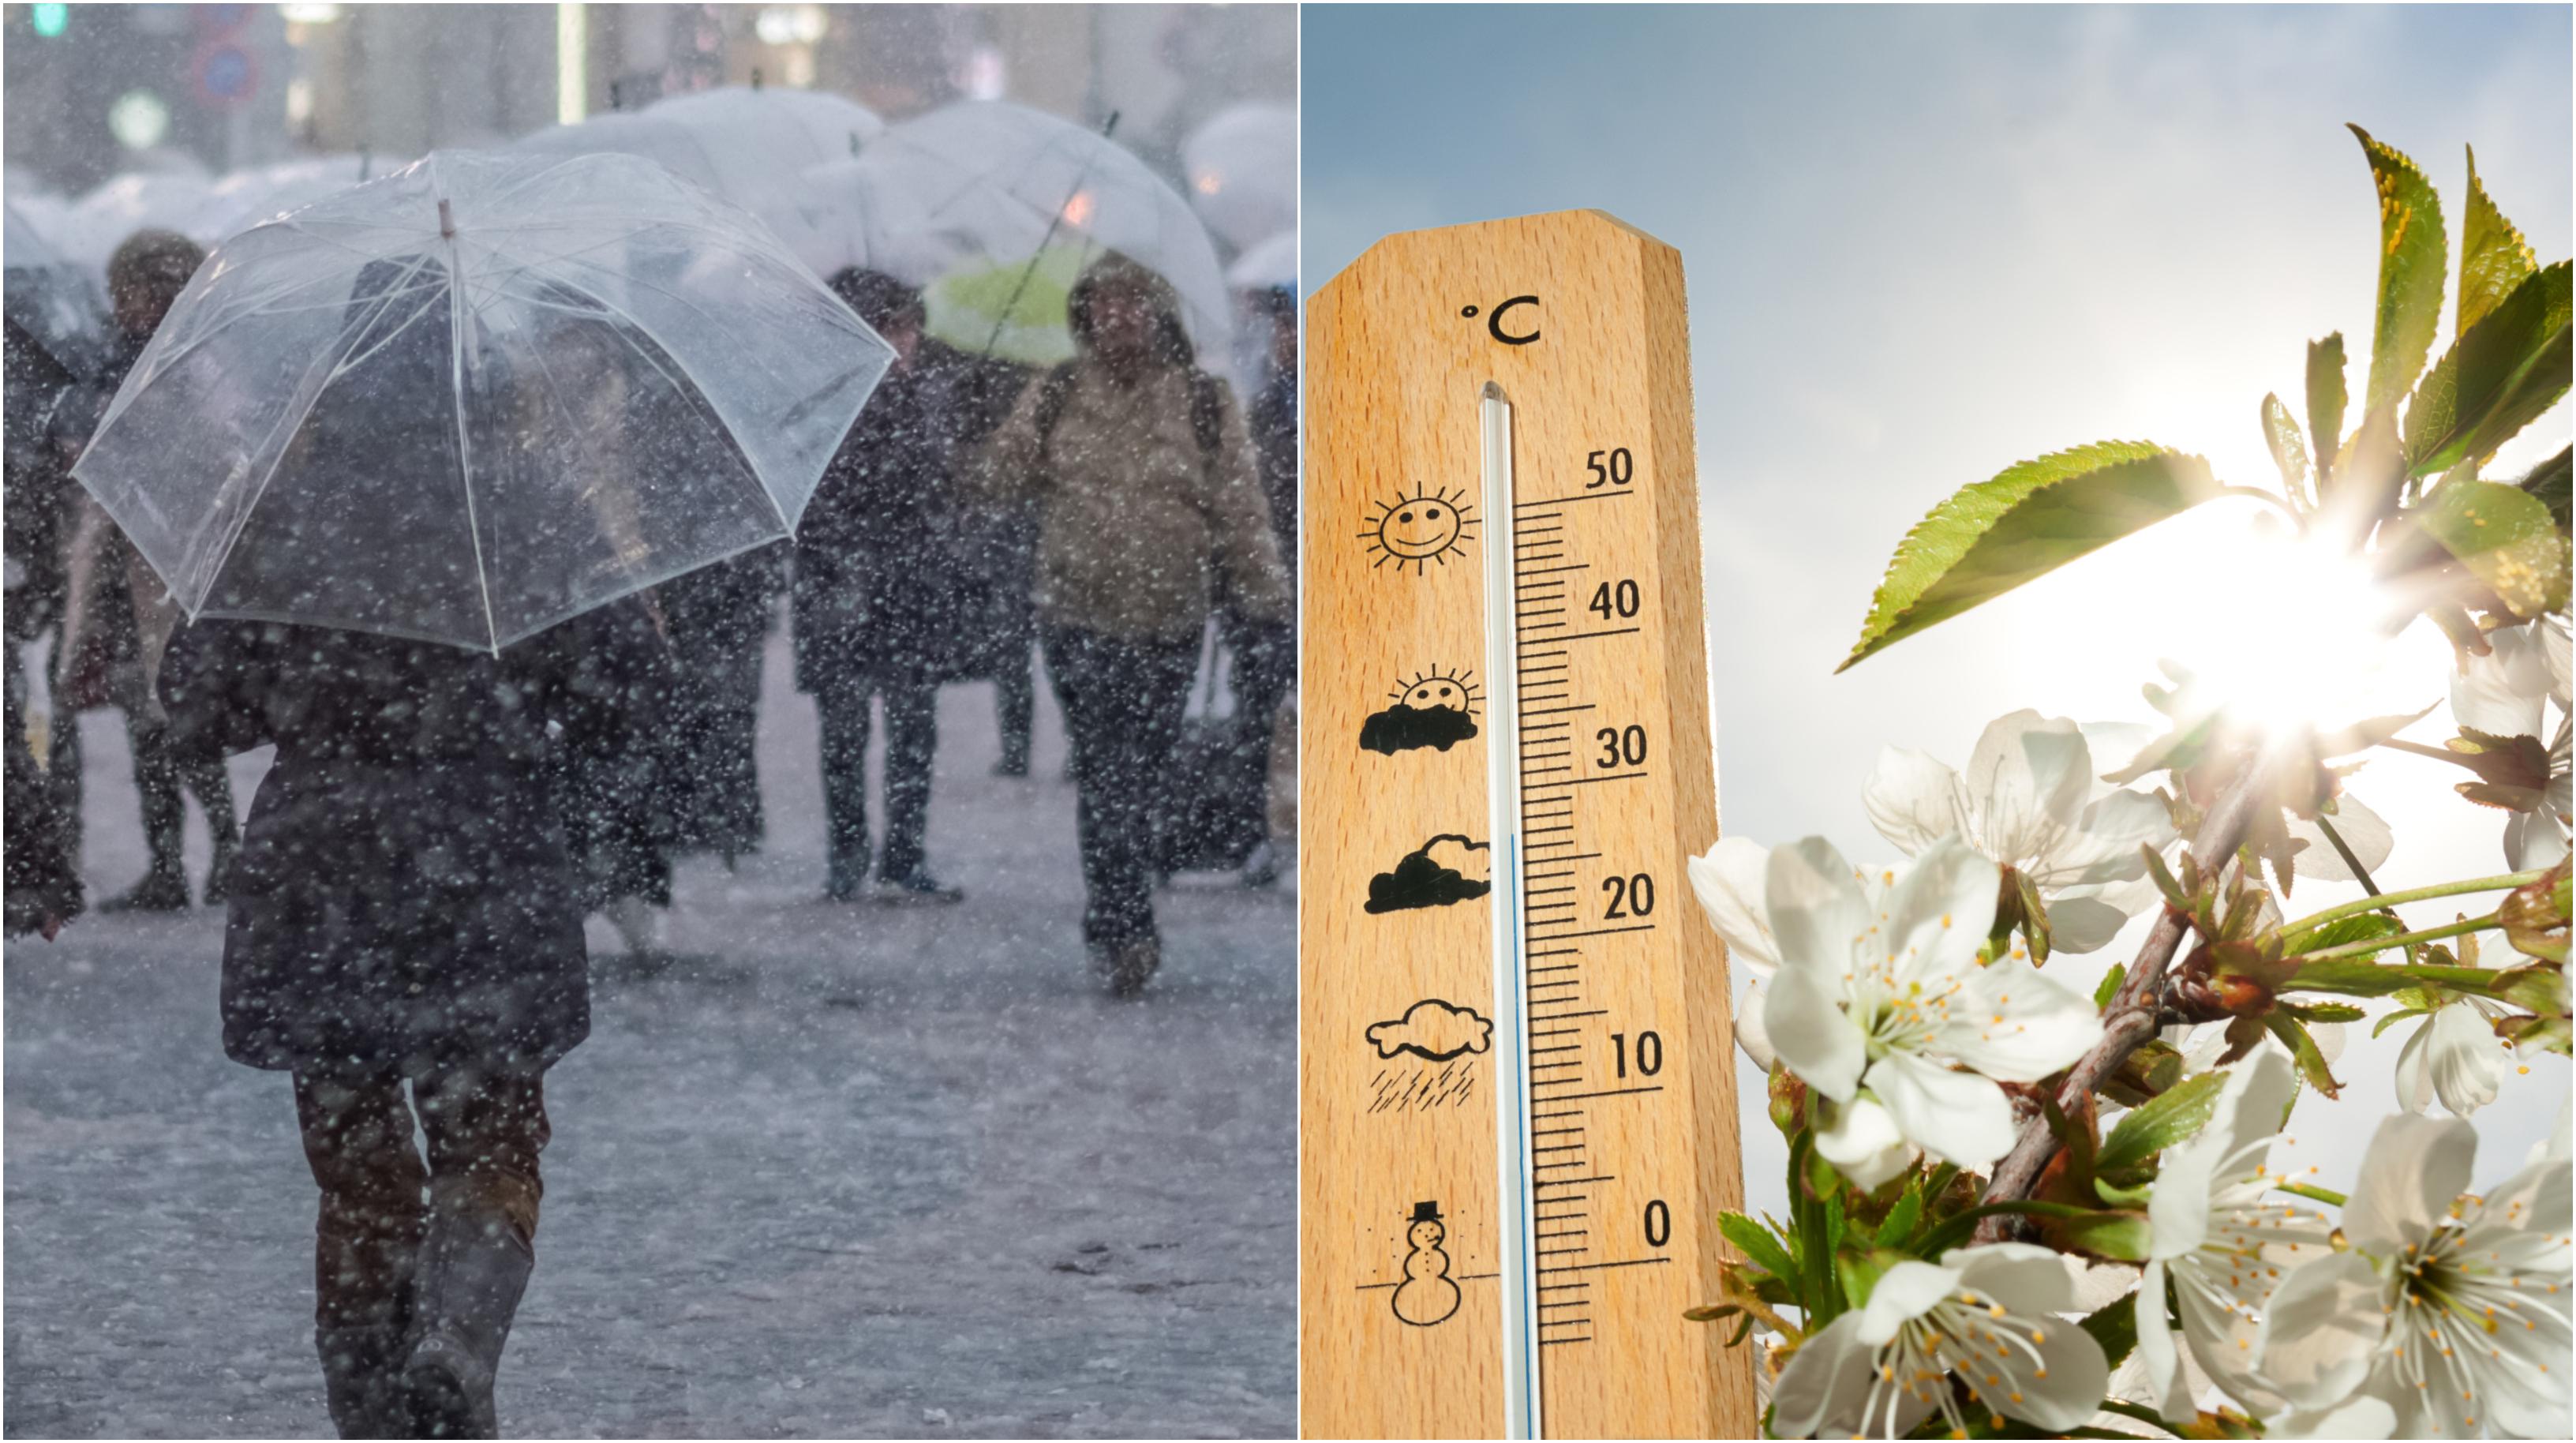 Vremea se răceste brusc, România se împarte în două! Ploi și ninsori, dar și temperaturi de 22 de grade în anumite zone